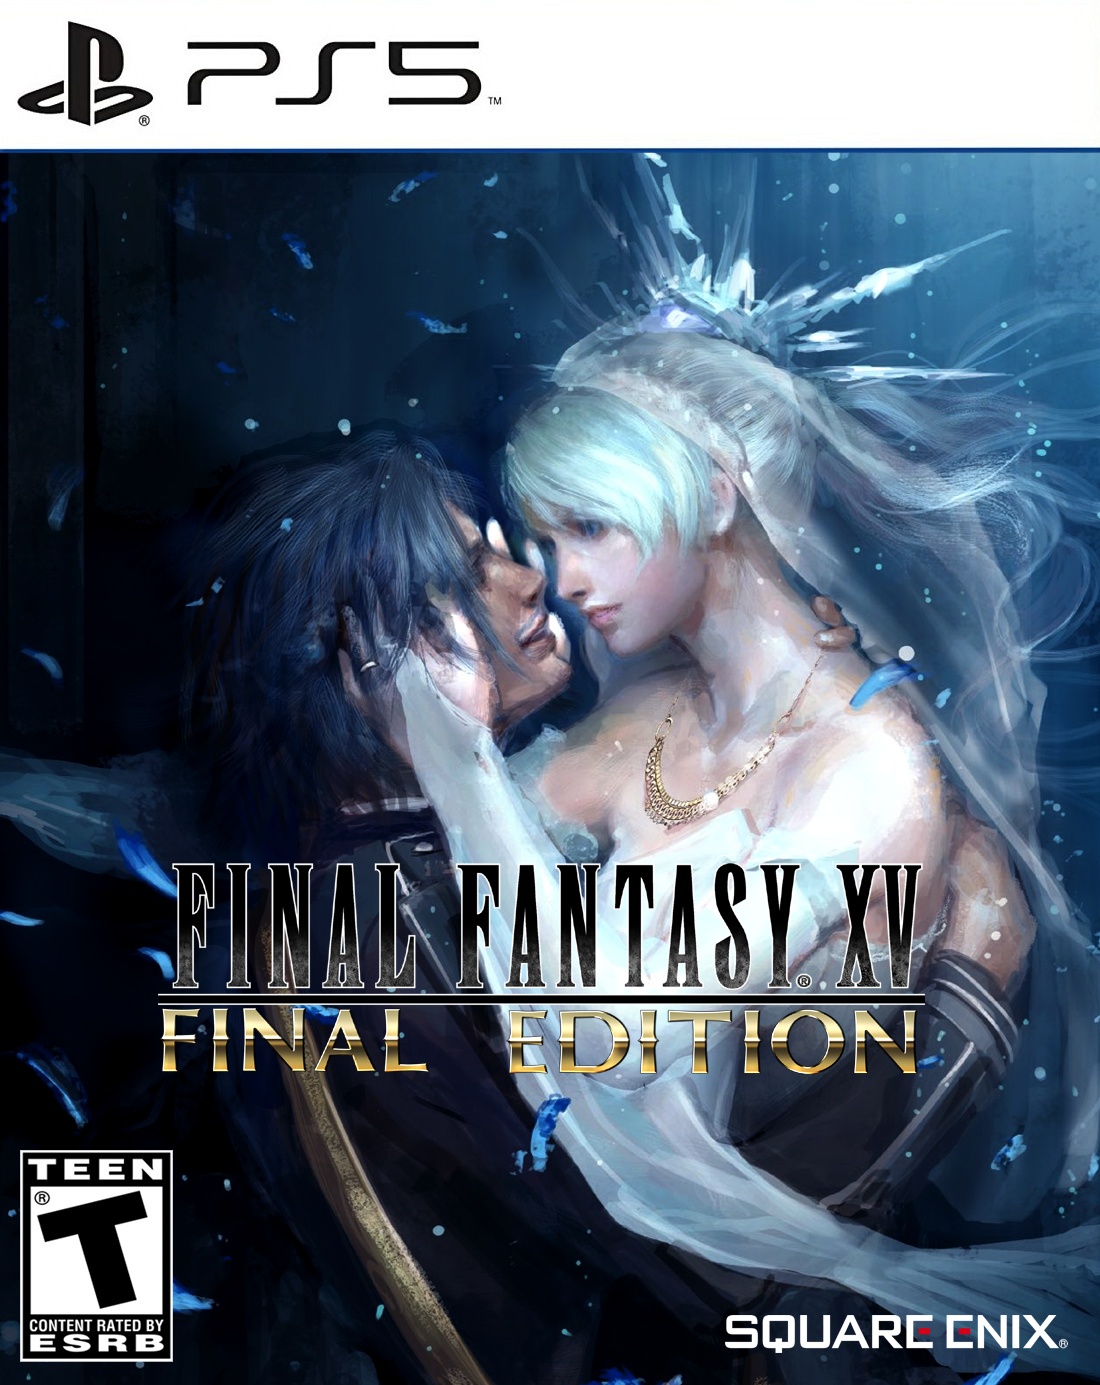 Final Fantasy XV: Final Edition box cover